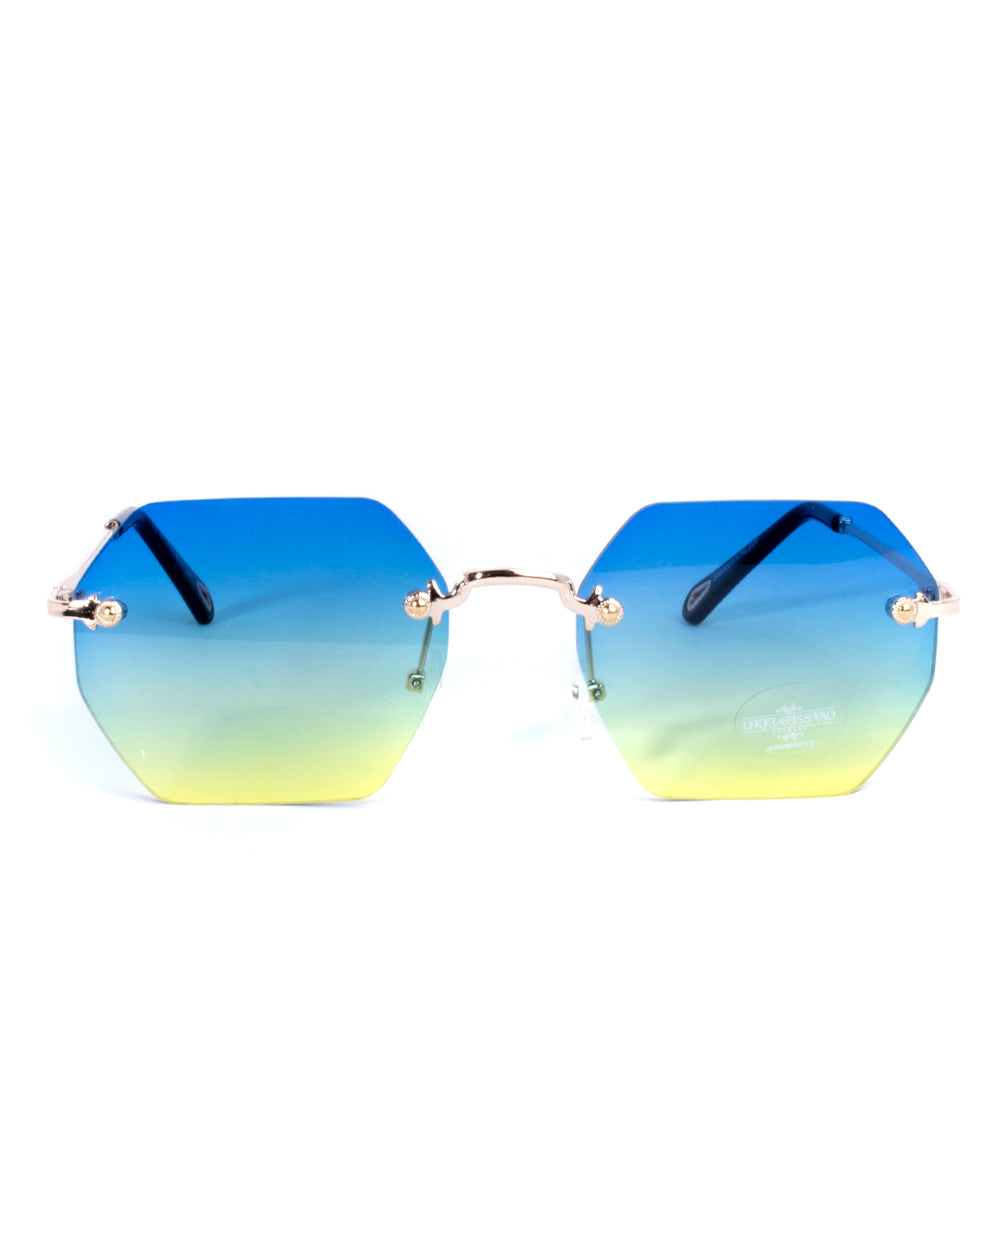 Occhiali da Sole Uomo Unisex Sunglassess Bicolore Squadrati Metallo GIOSAL-OC1022A